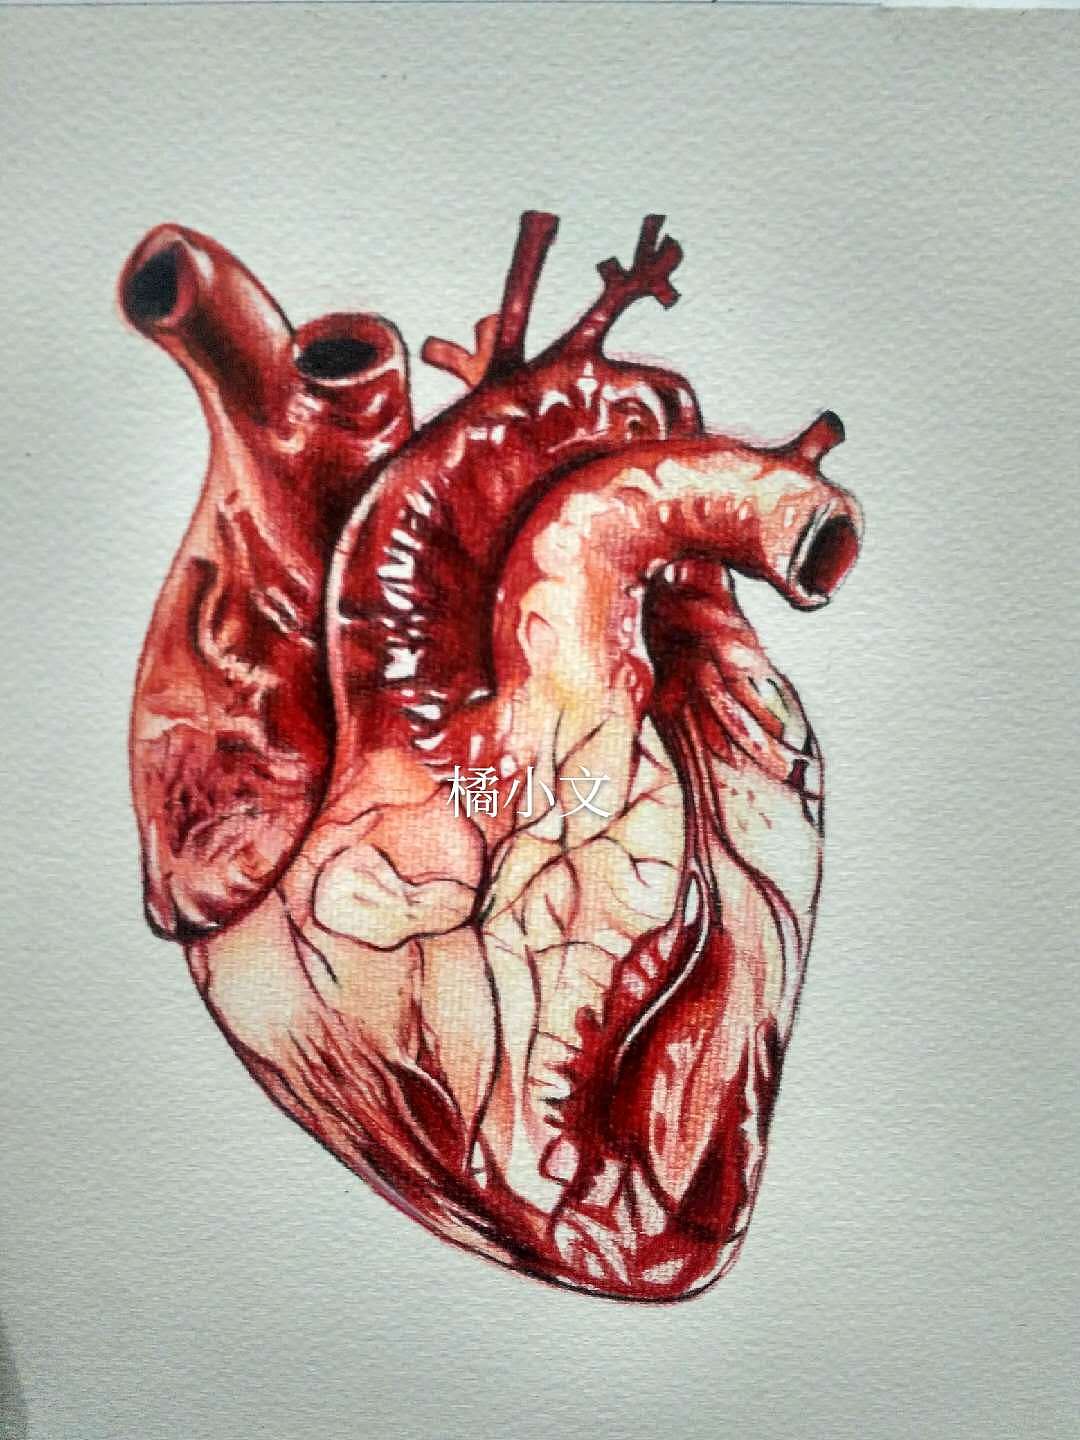 医学生画的心脏图片图片